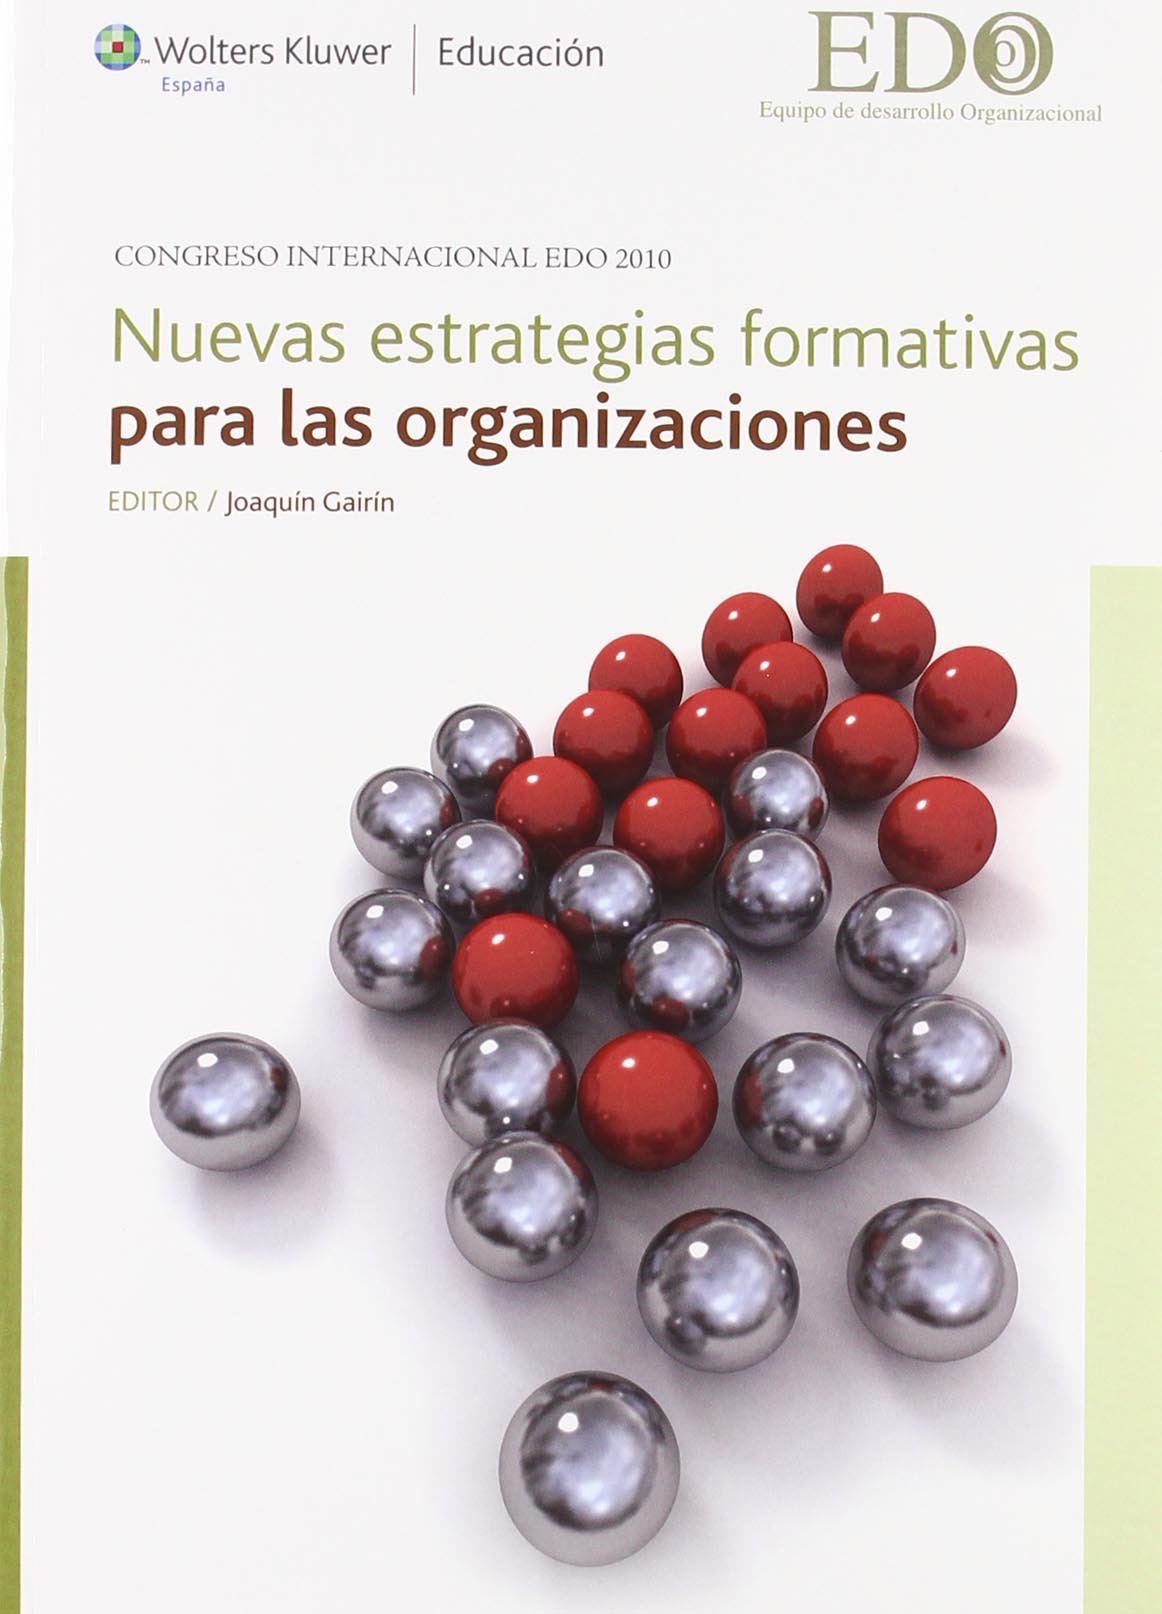 Imagen de portada del libro Nuevas estrategias formativas para las organizaciones